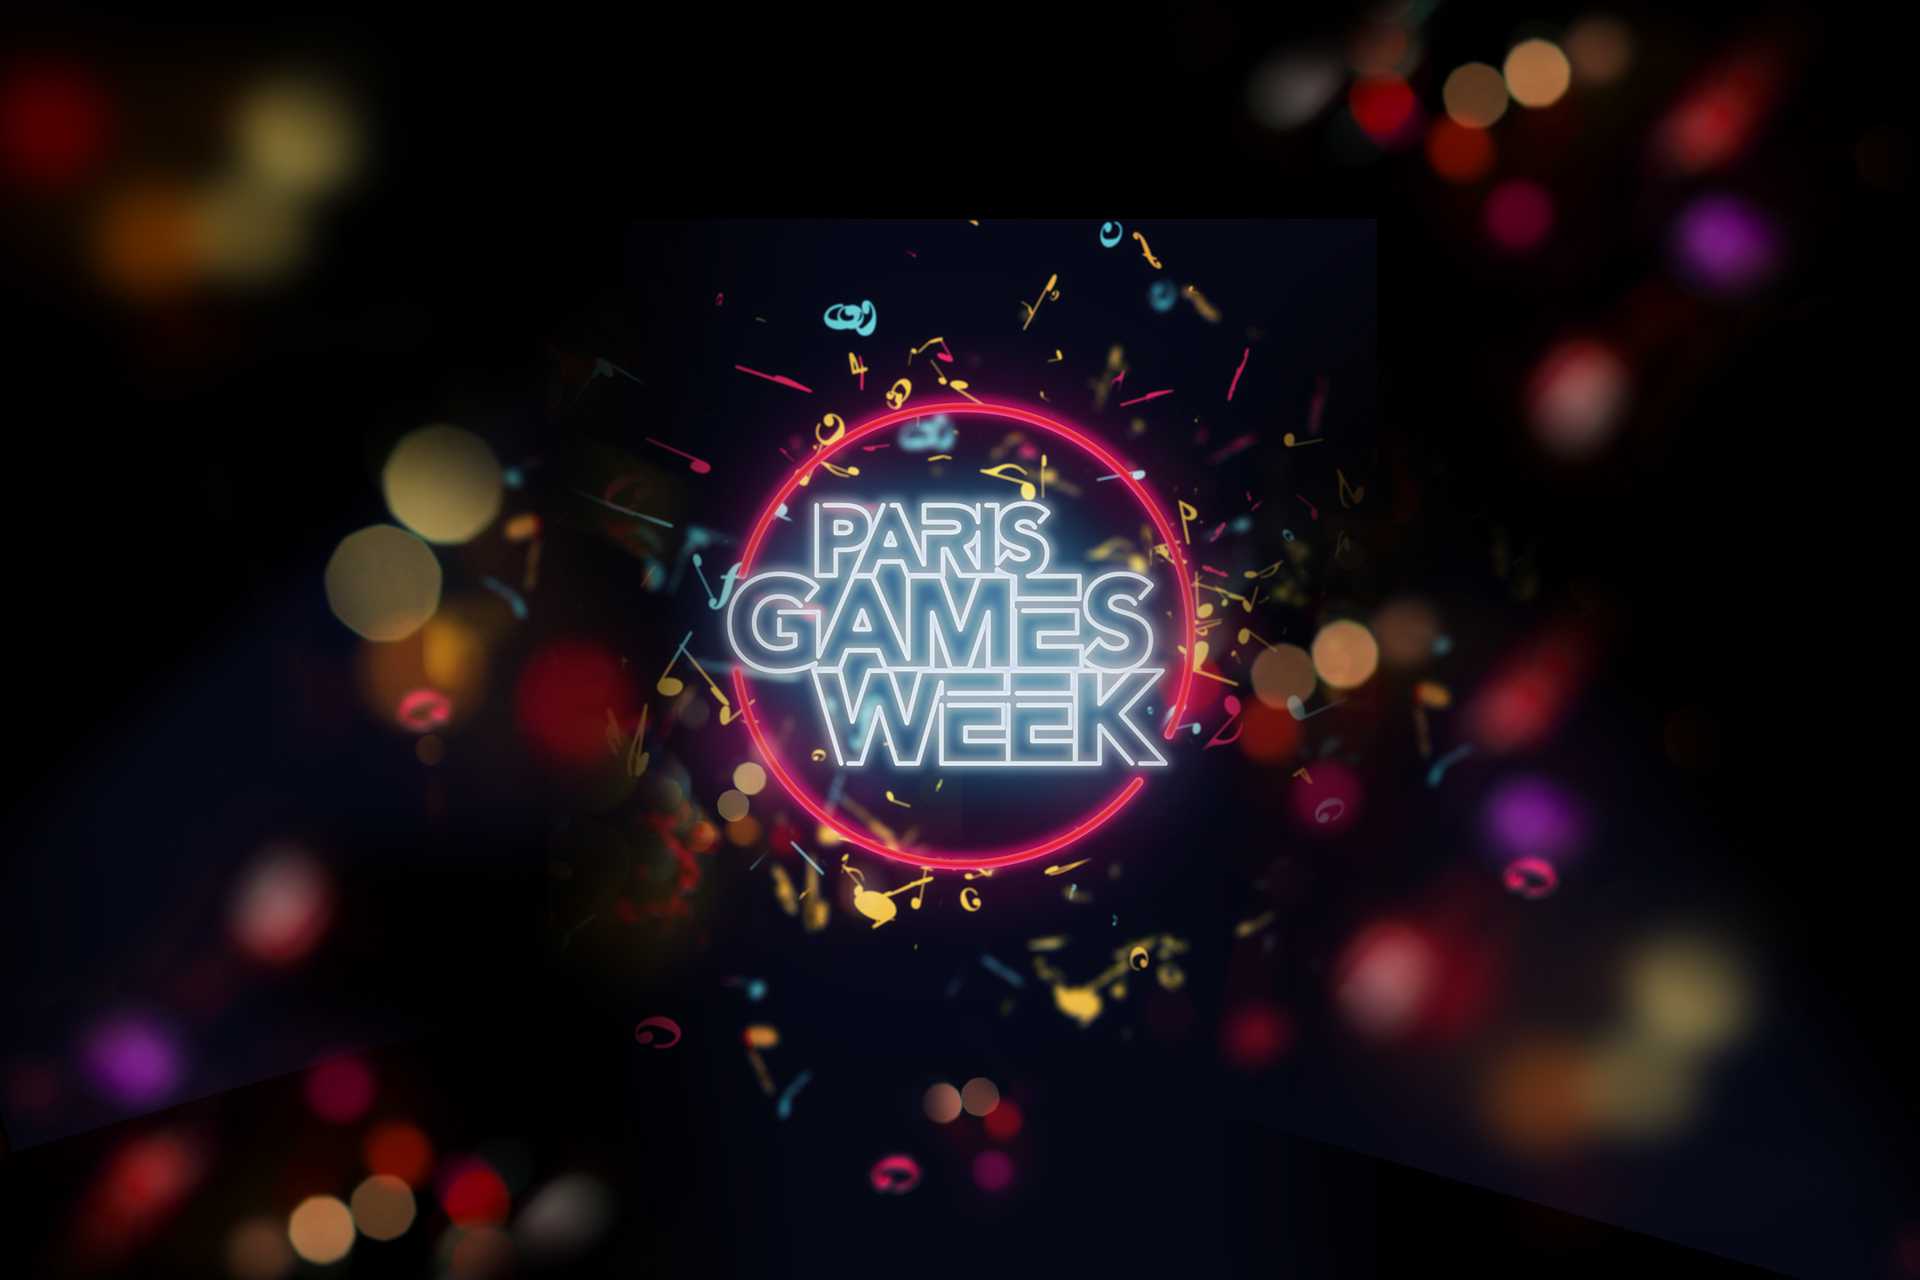 Paris Games Week 2017